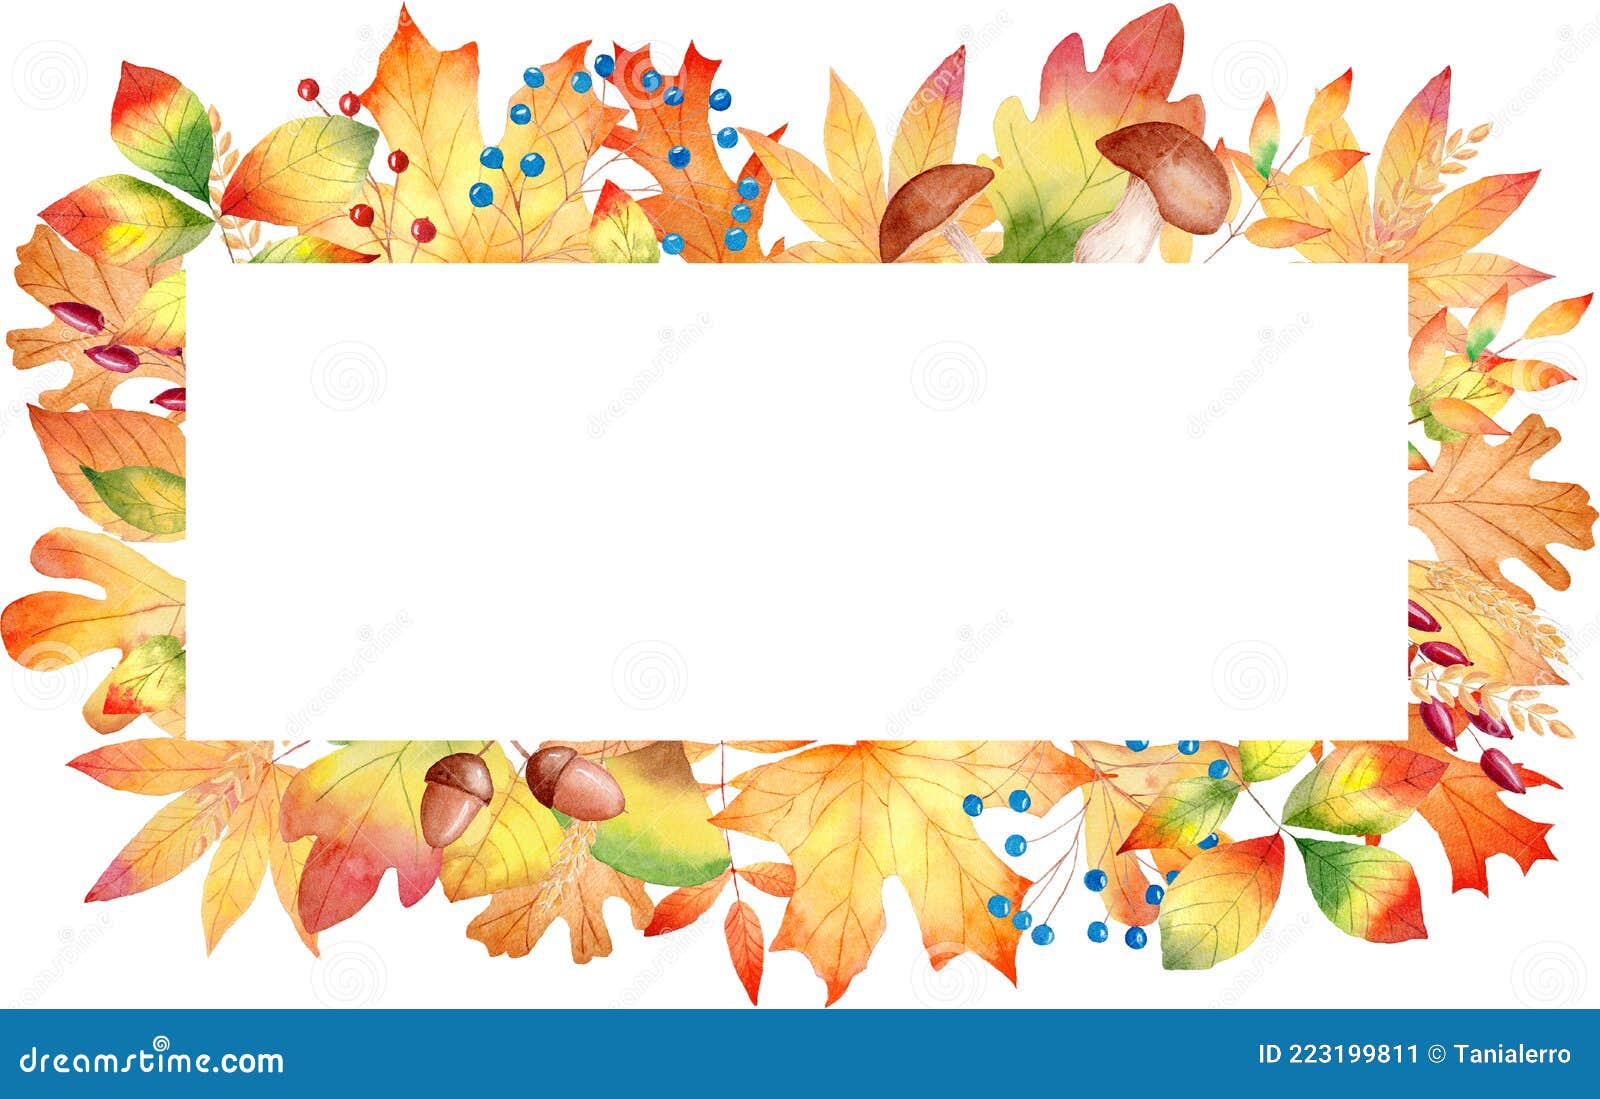 Рамка для поздравительной открытки - клипарт в векторном формате